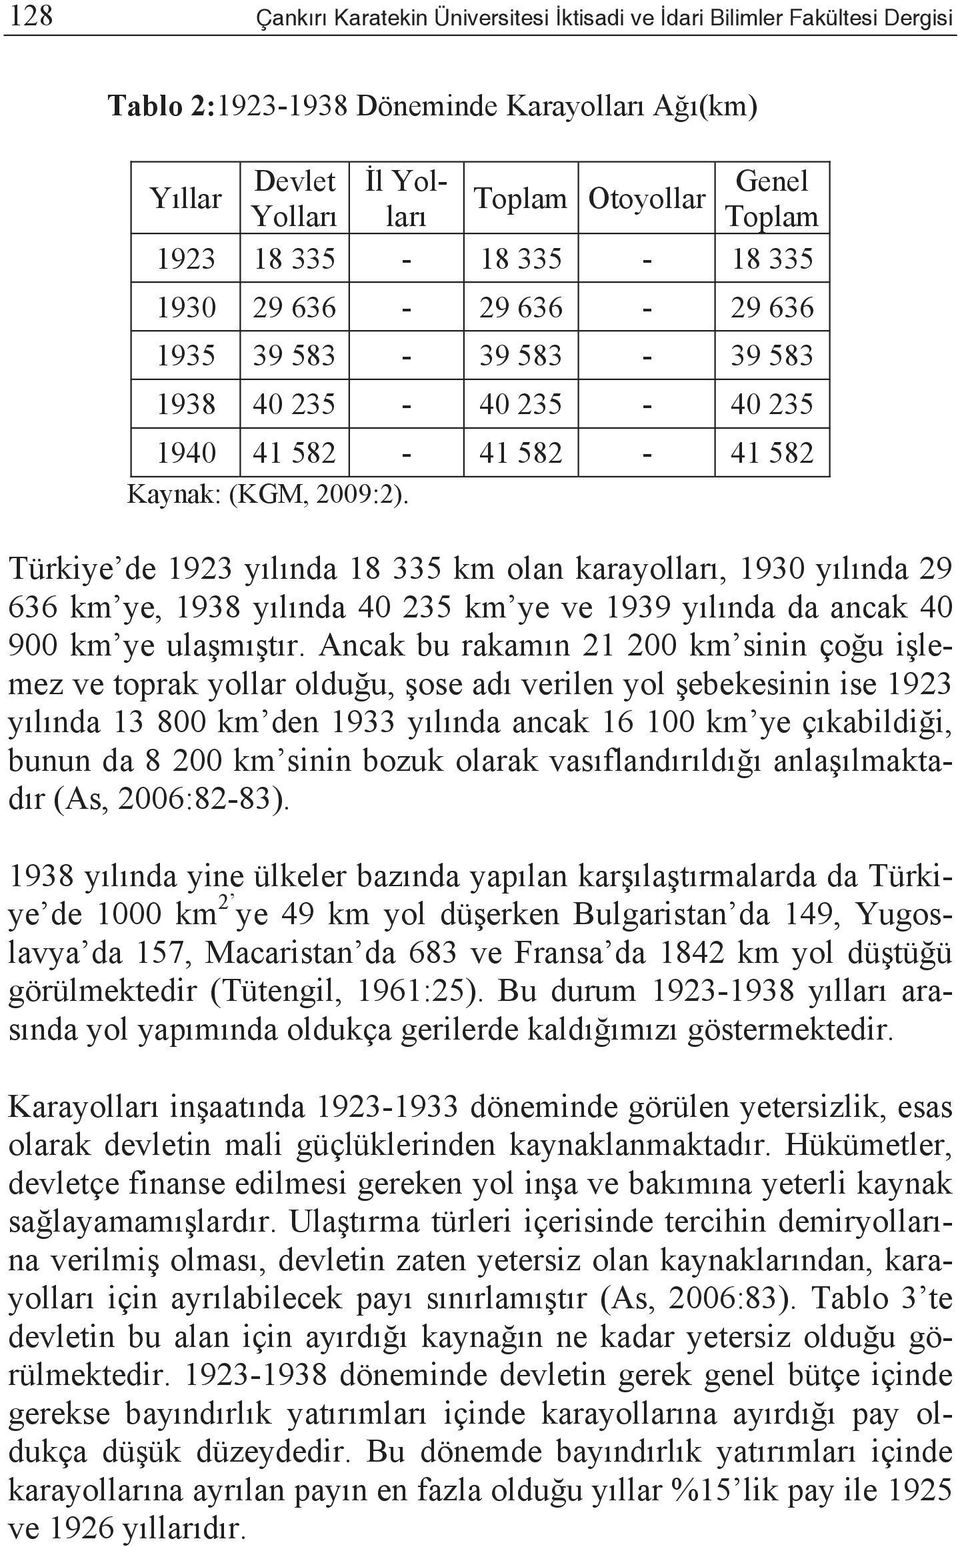 Türkiye de 1923 y l nda 18 335 km olan karayollar, 1930 y l nda 29 636 km ye, 1938 y l nda 40 235 km ye ve 1939 y l nda da ancak 40 900 km ye ula m t r.